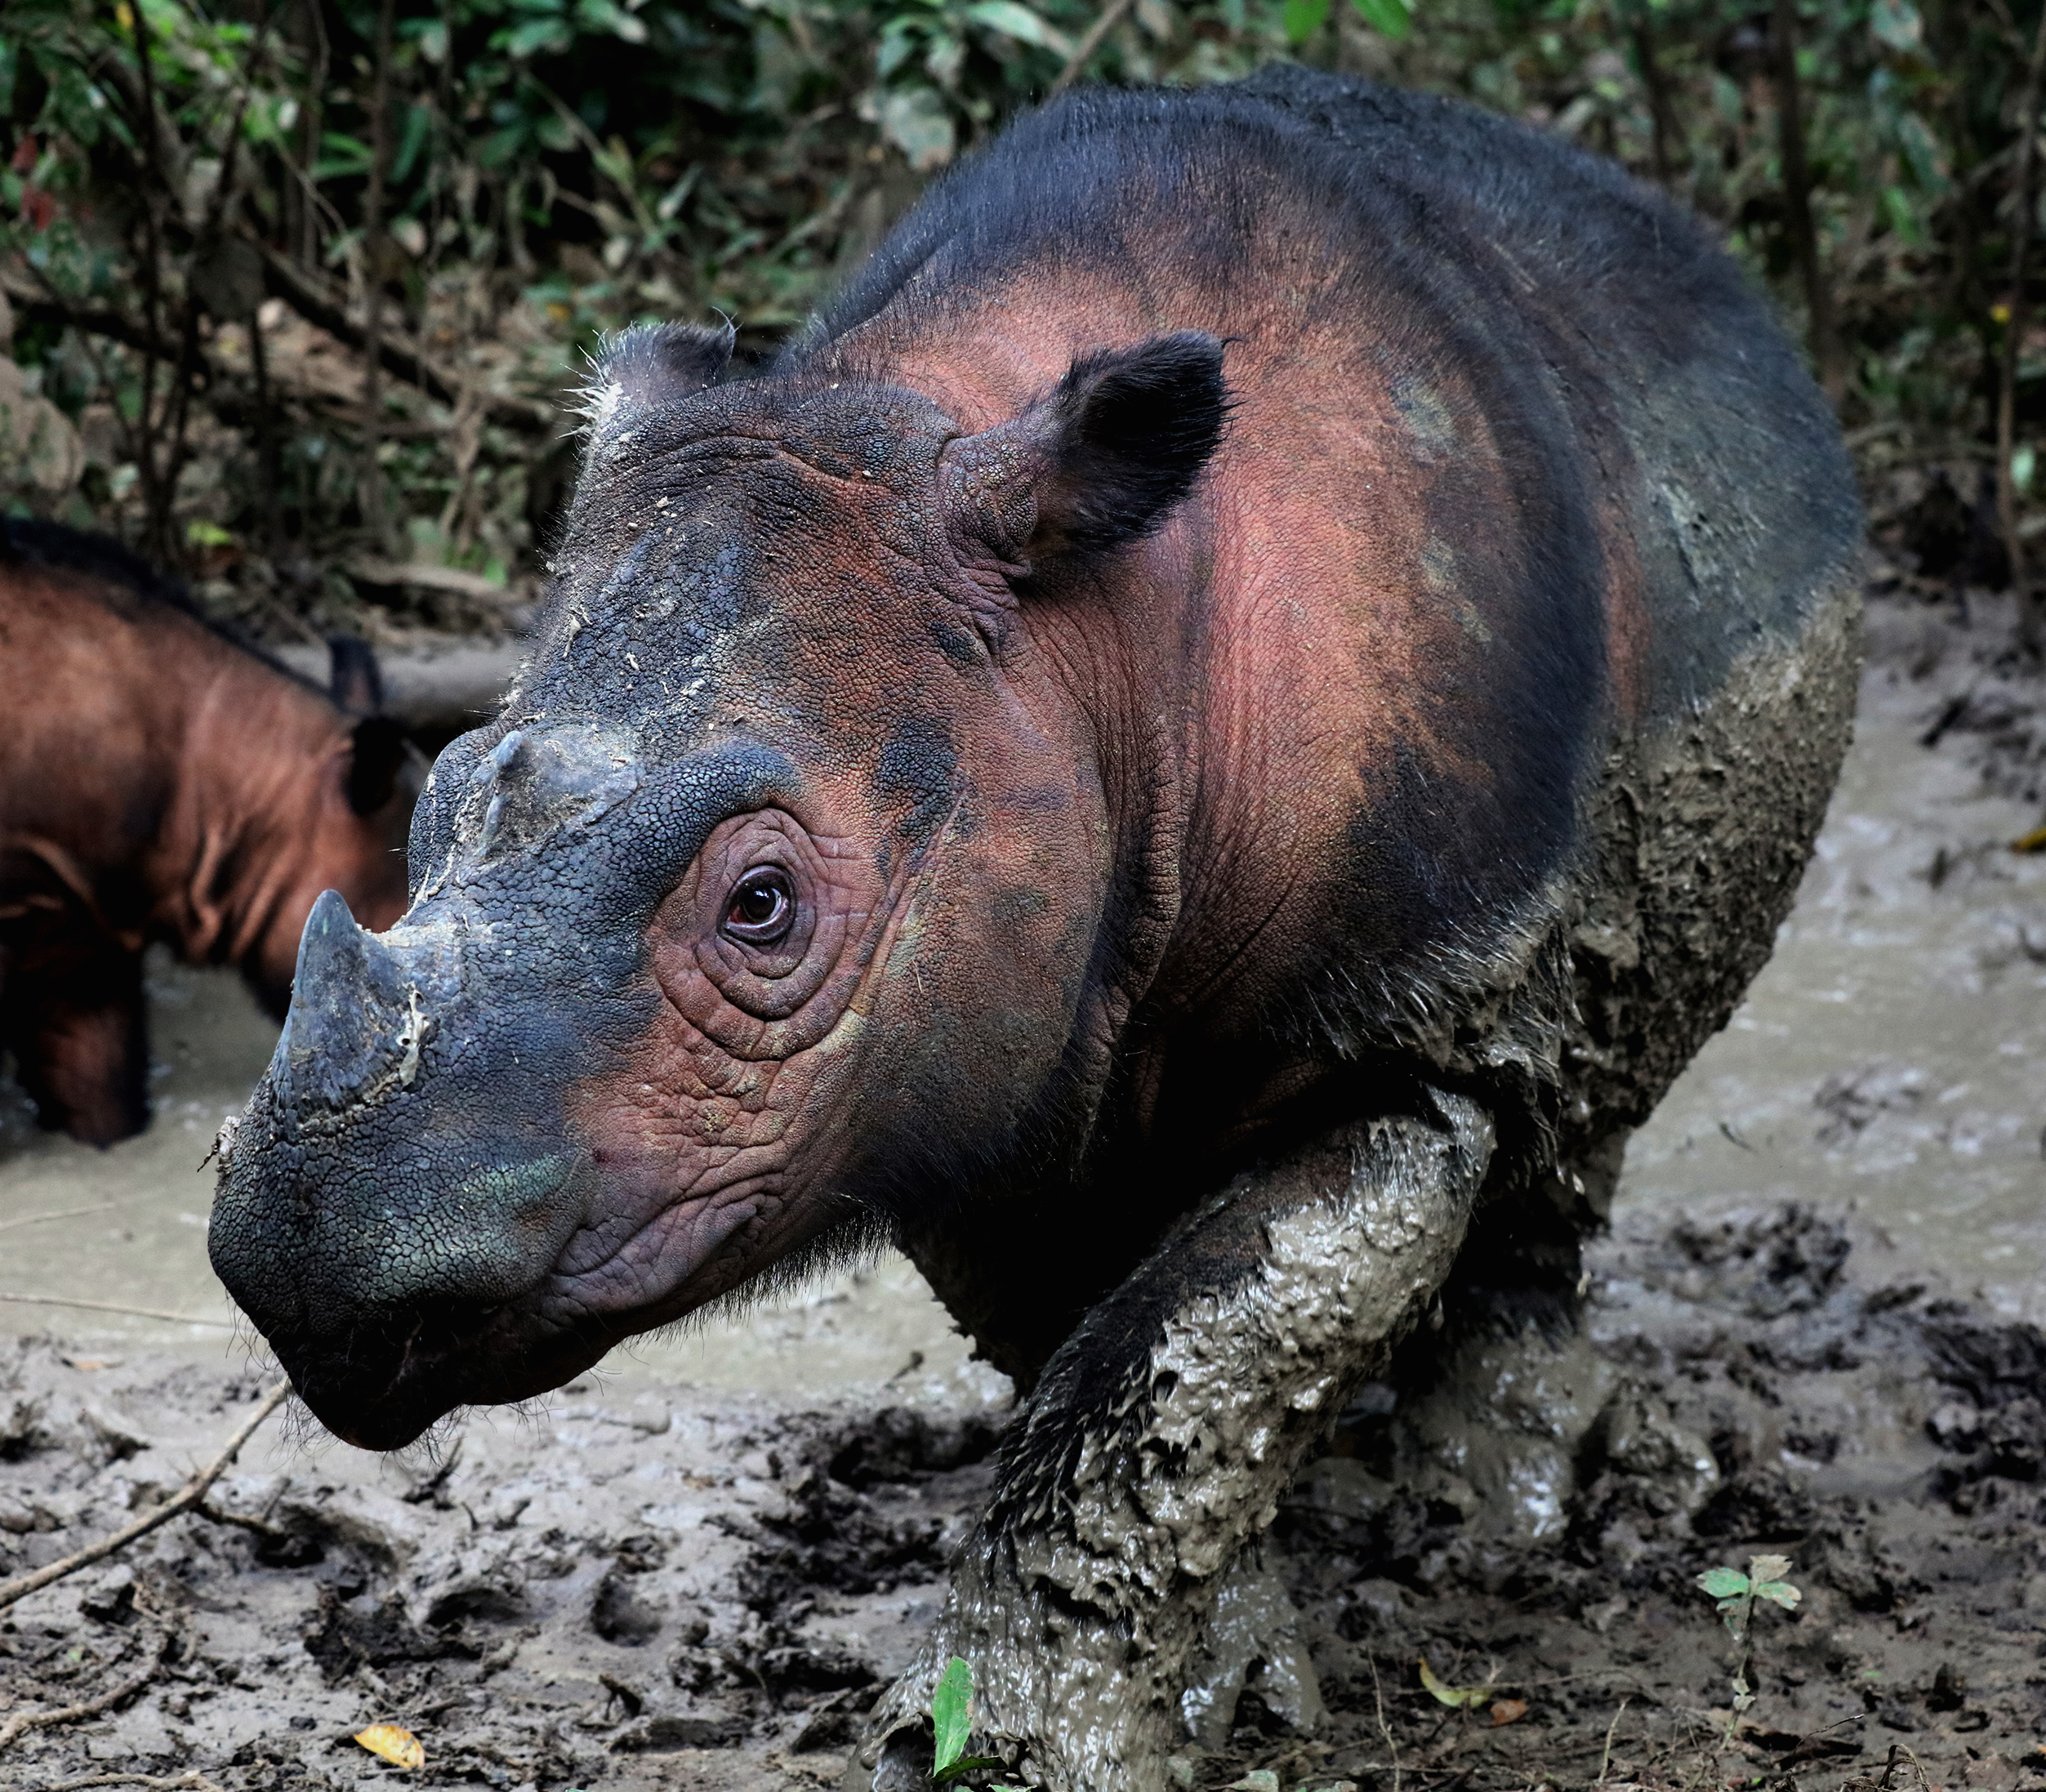 The Sumatran rhino